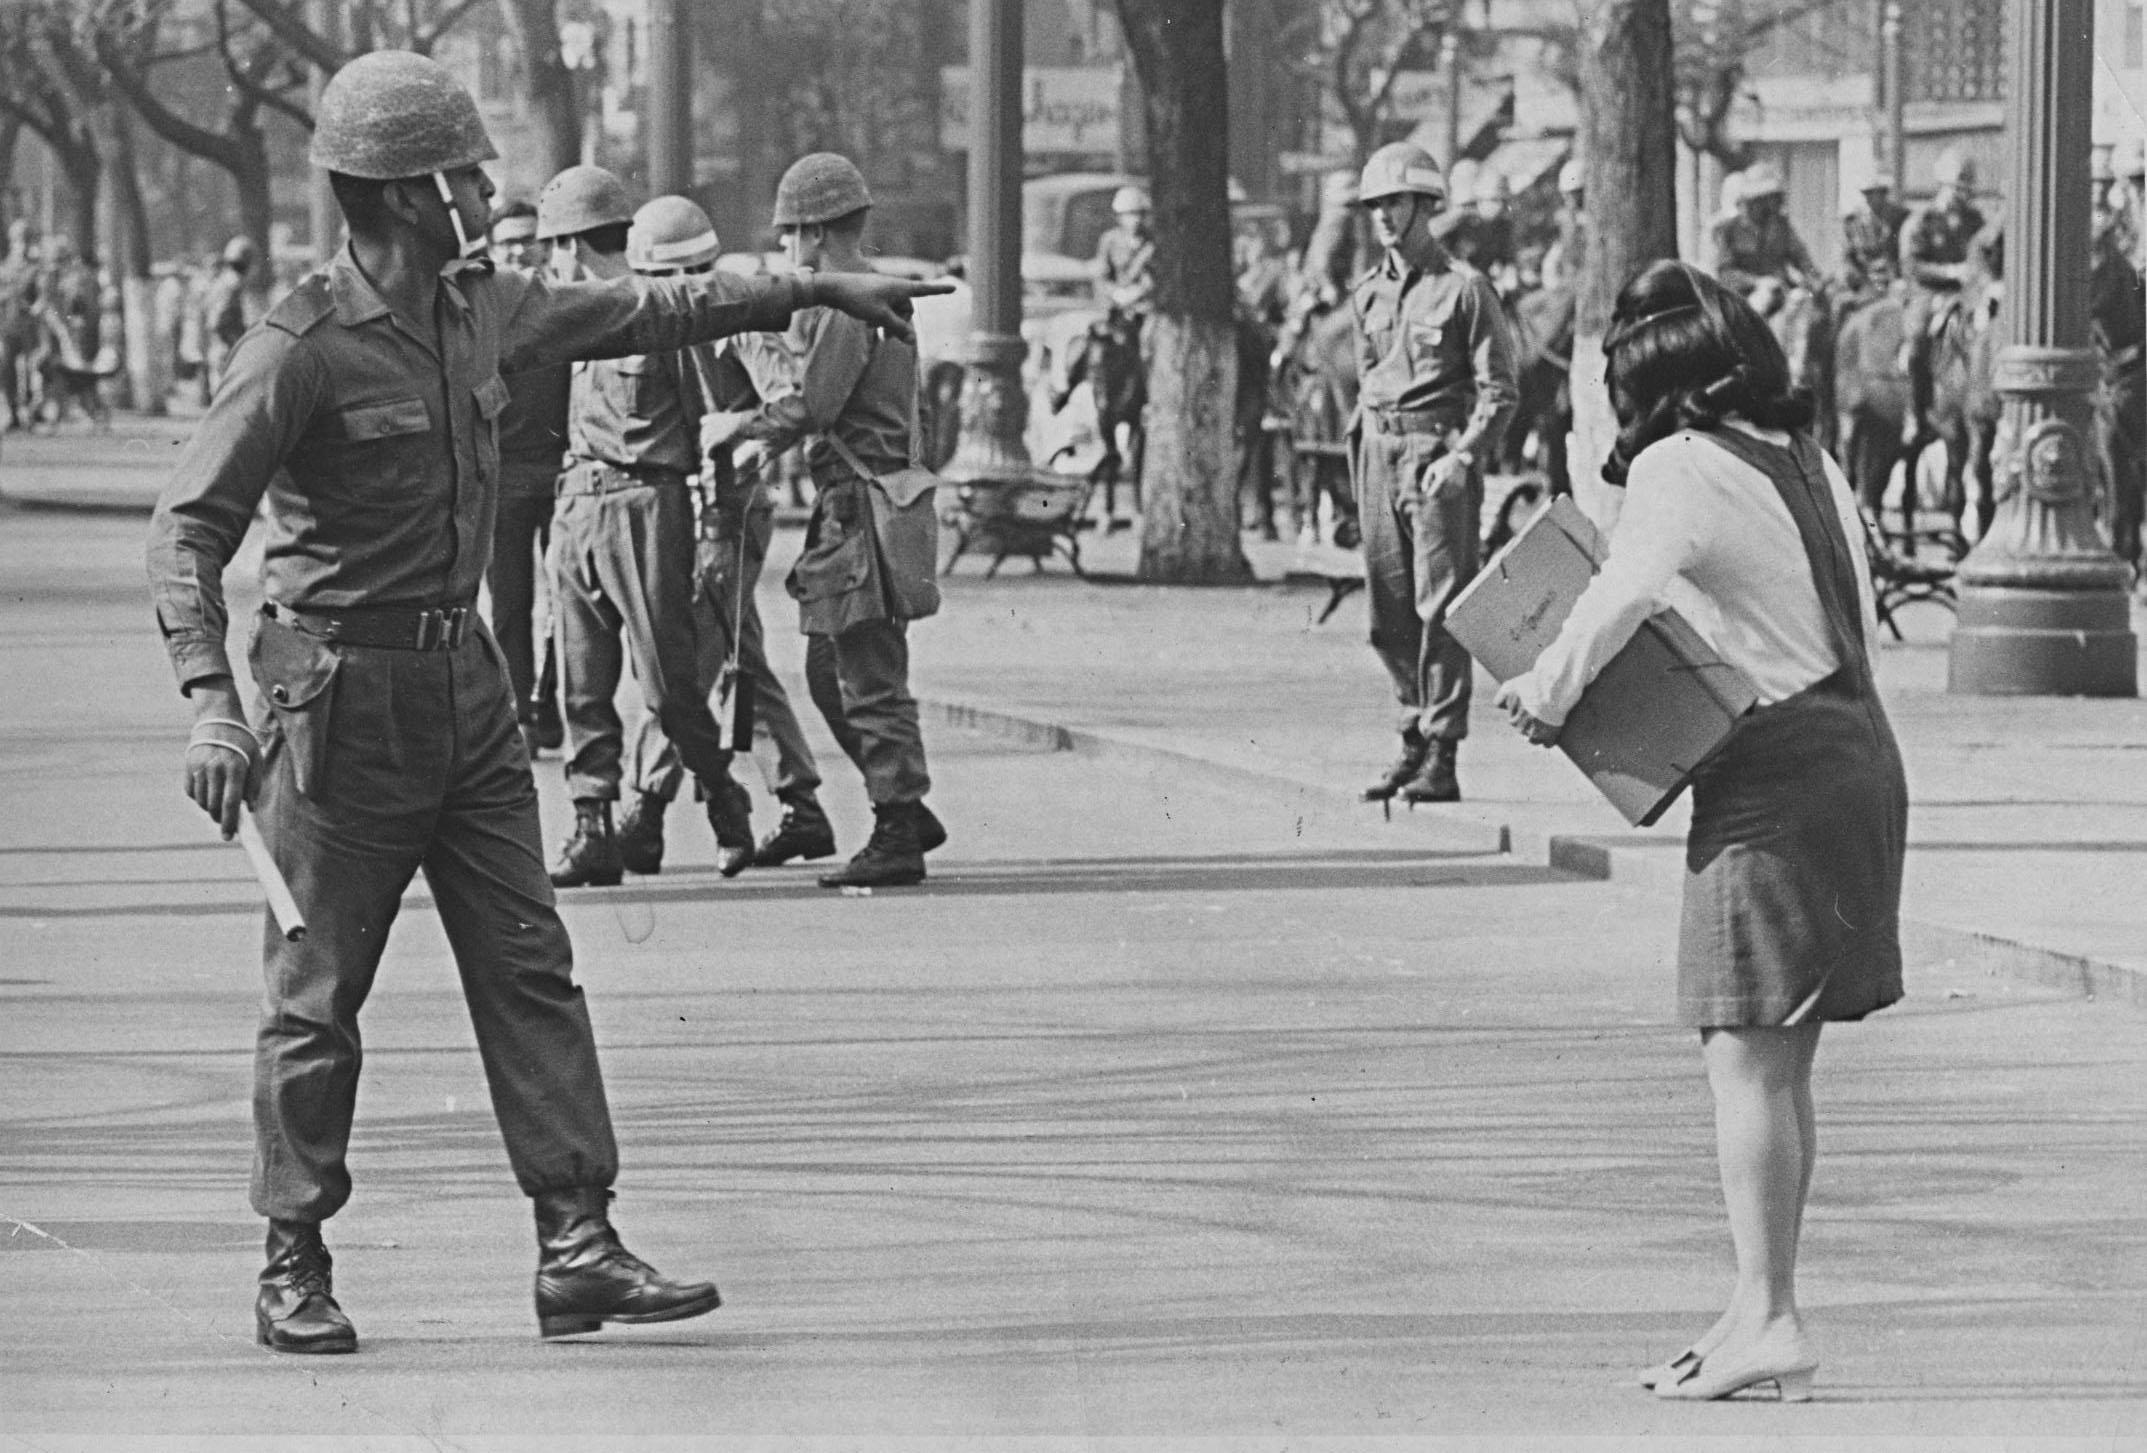 Uma unidade de múltiplas determinações: considerações sobre o golpe empresarial civil-militar de 1964 no Brasil